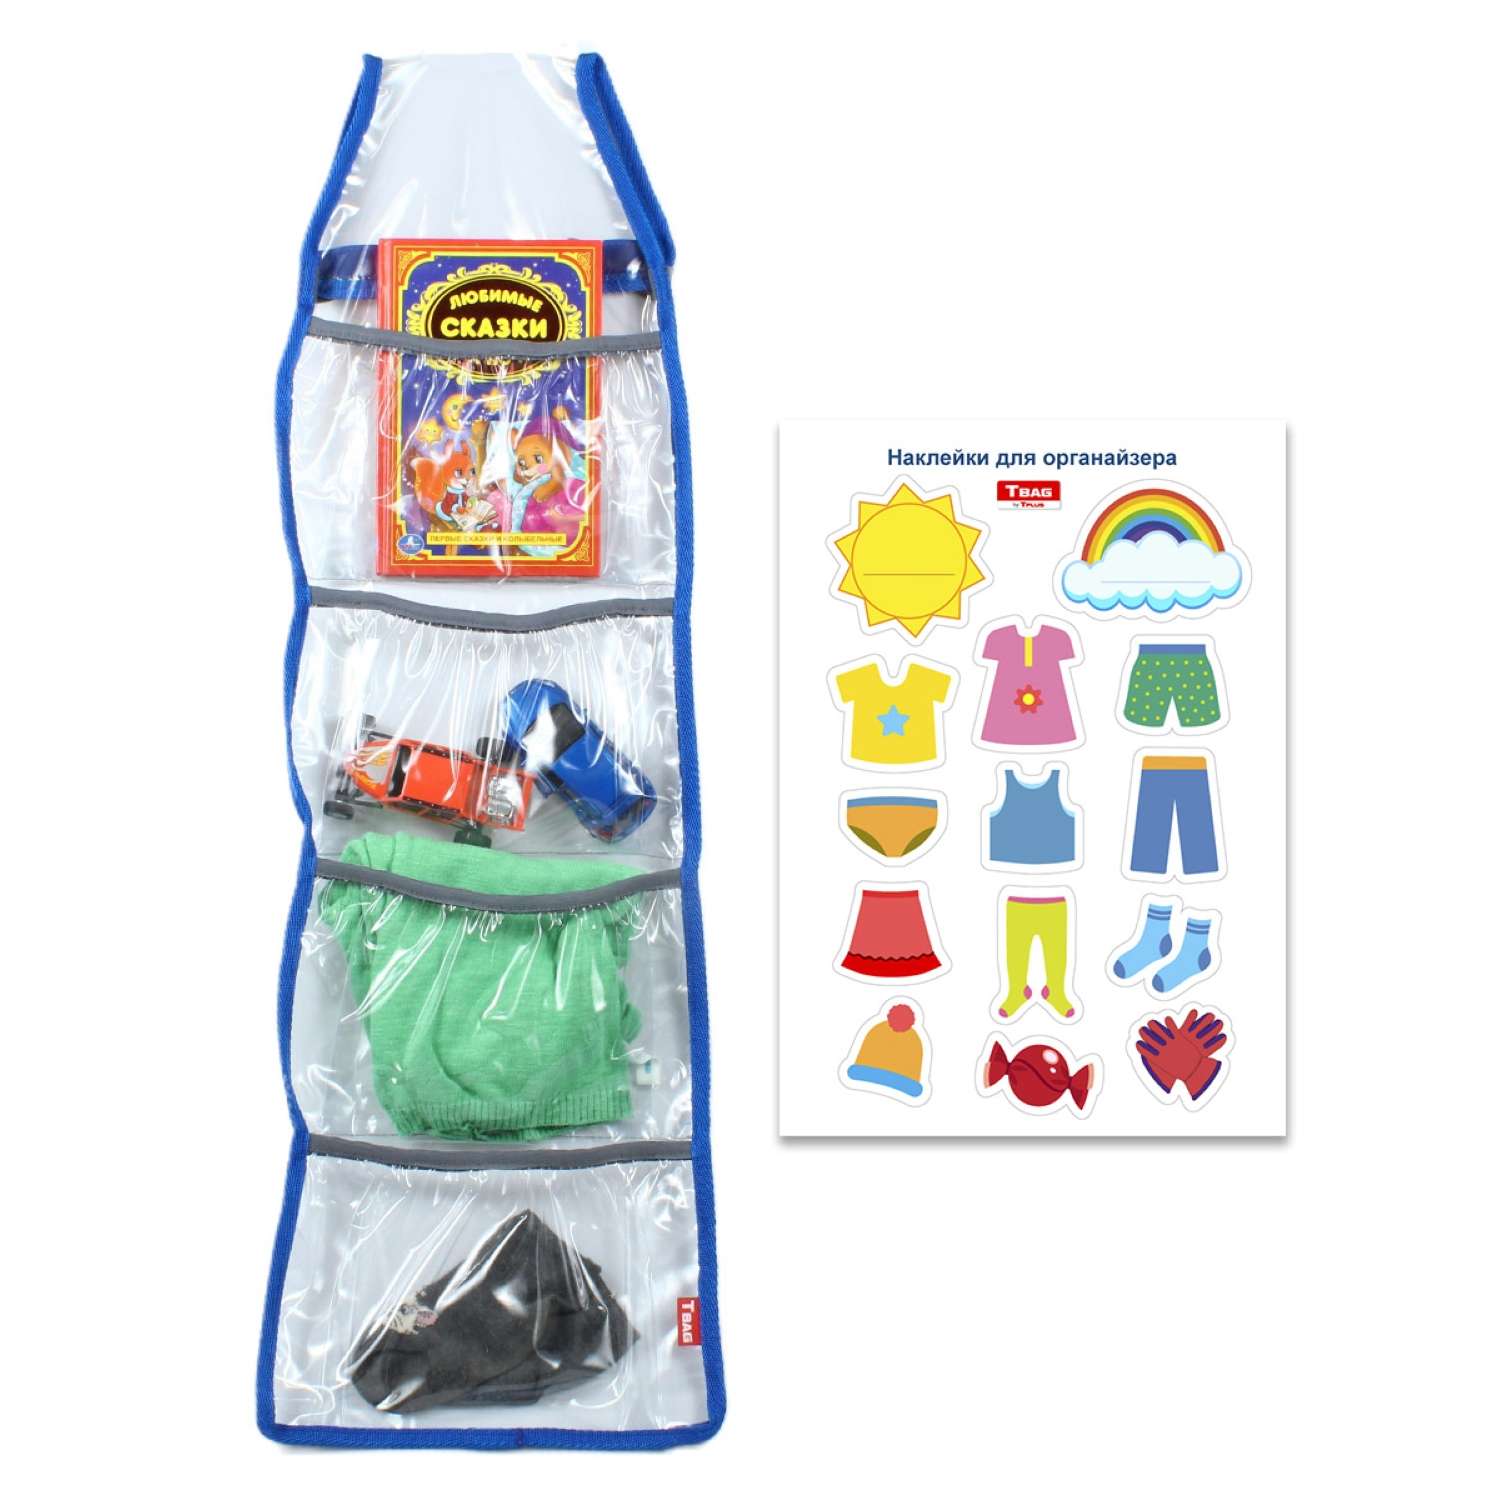 Игрушки в детской комнате: 12 лайфхаков по хранению